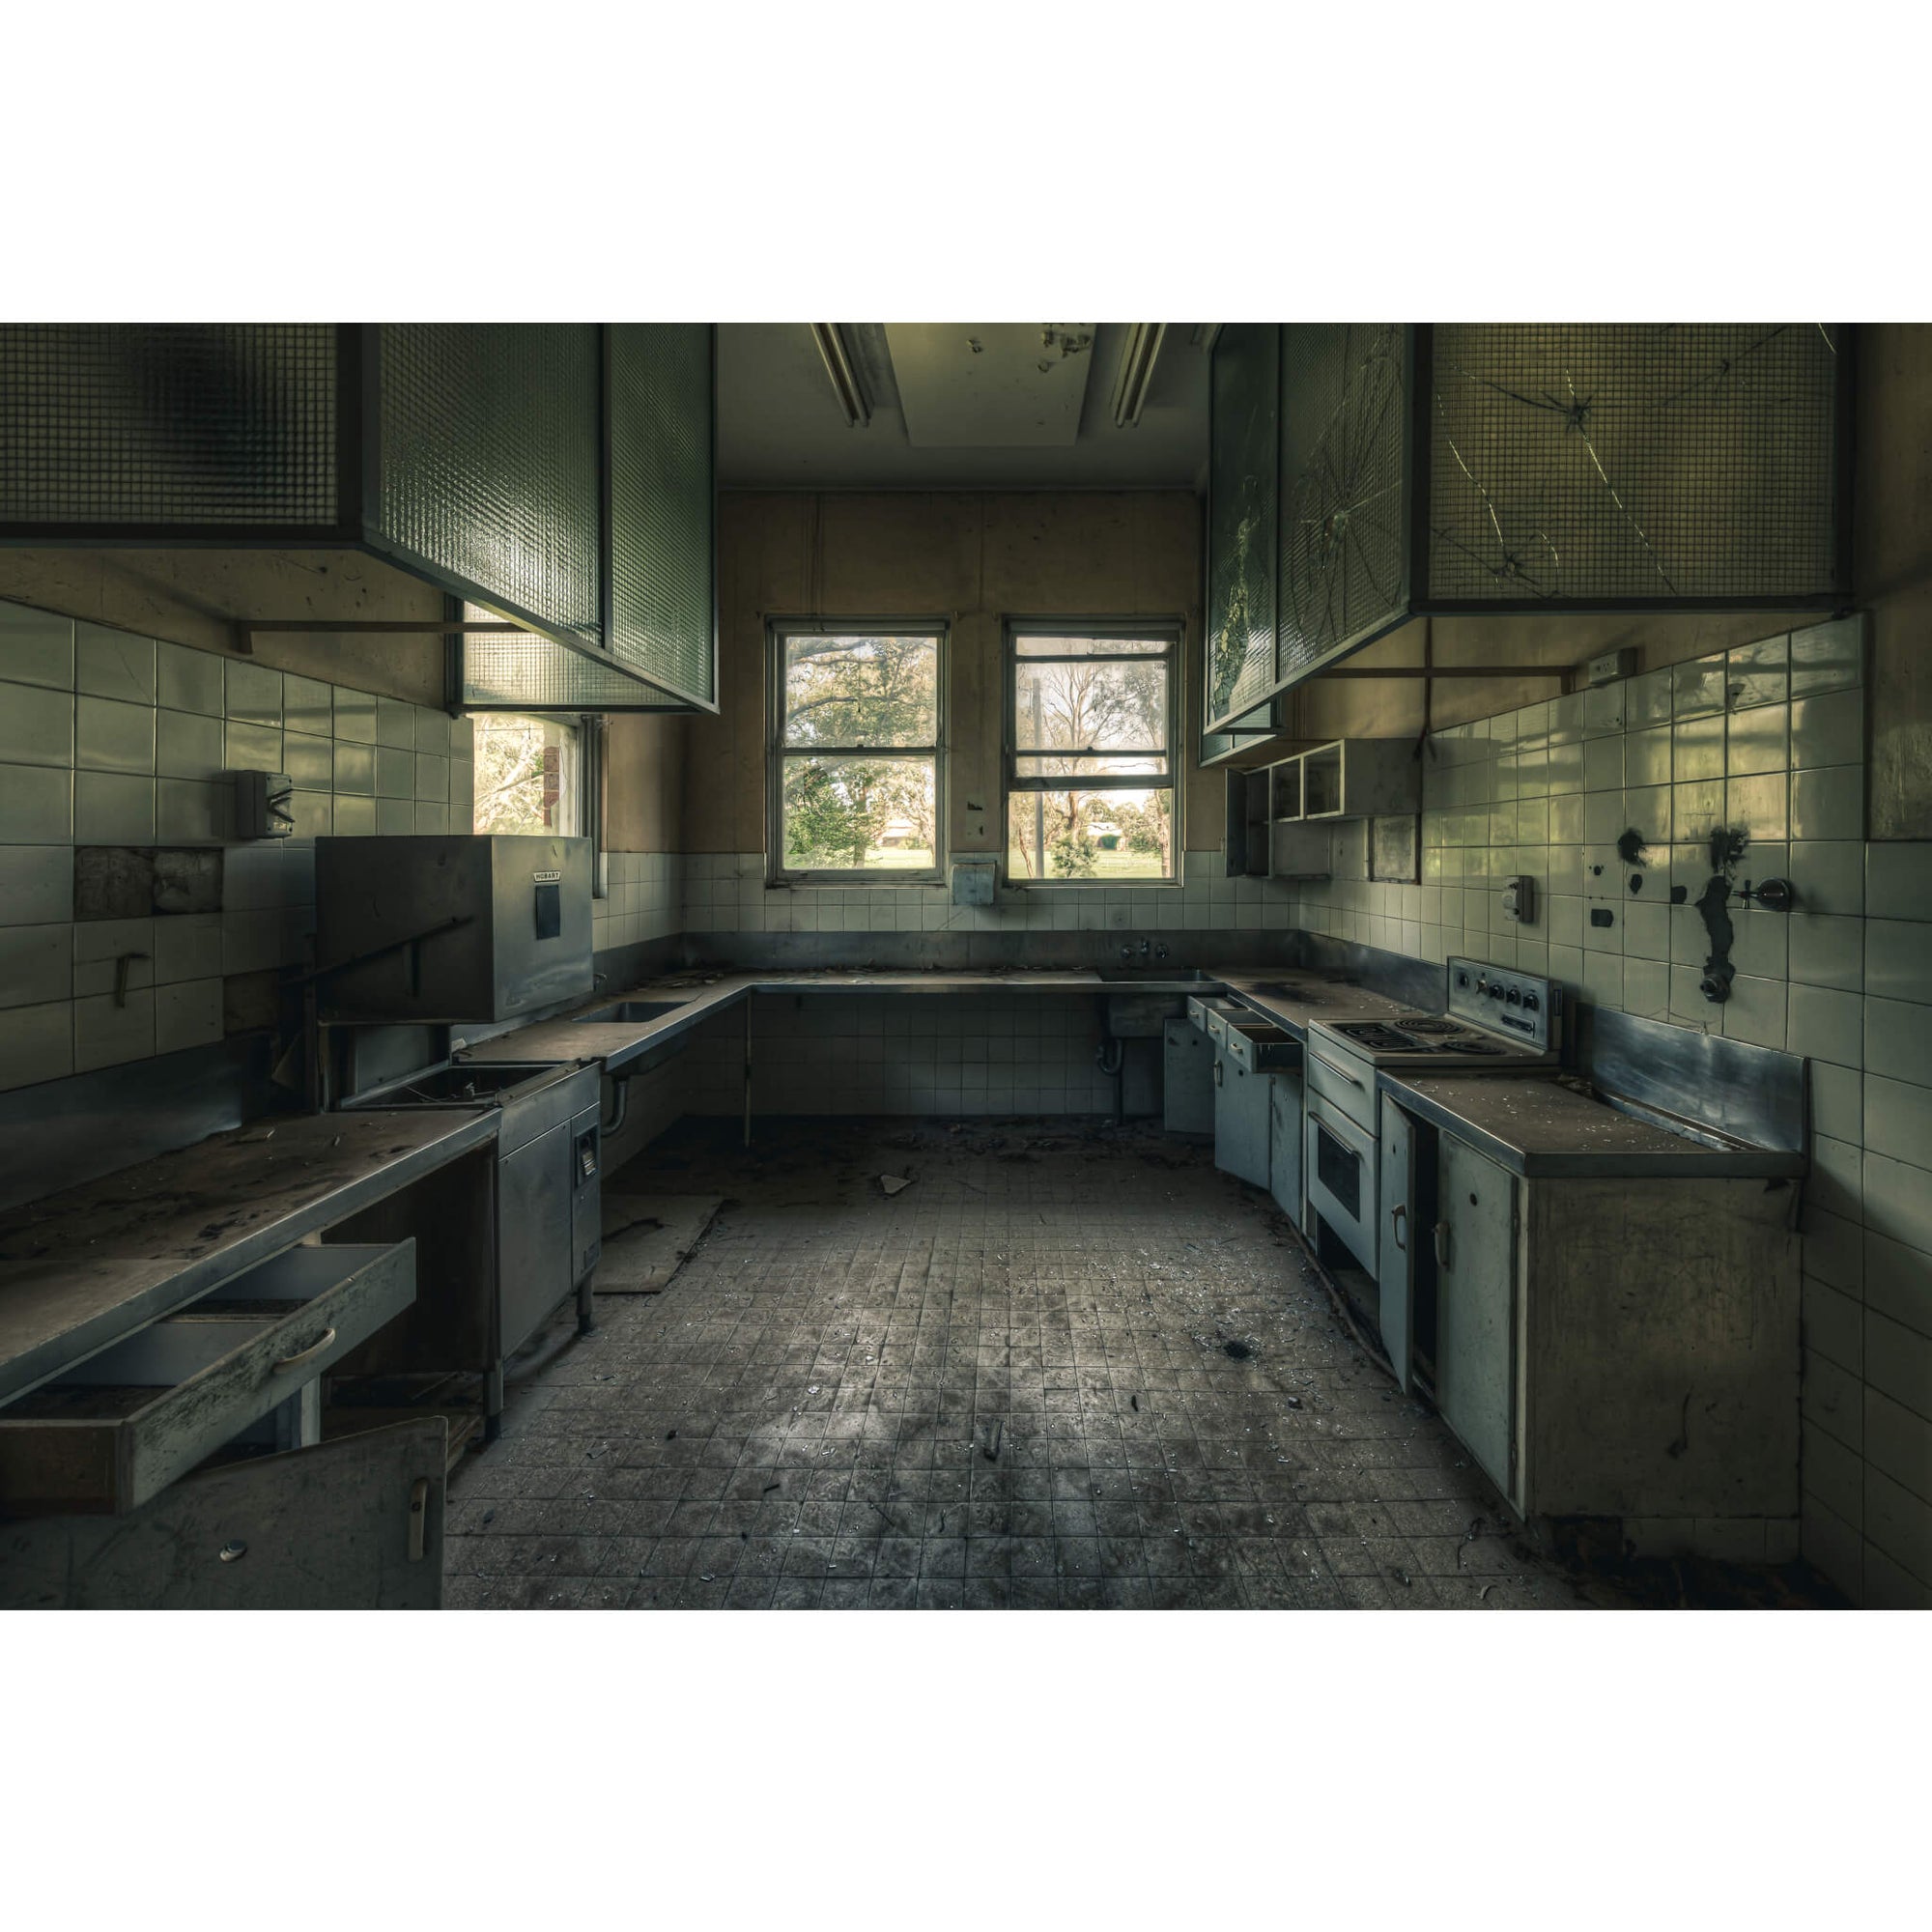 Dusty Kitchen | The Asylum